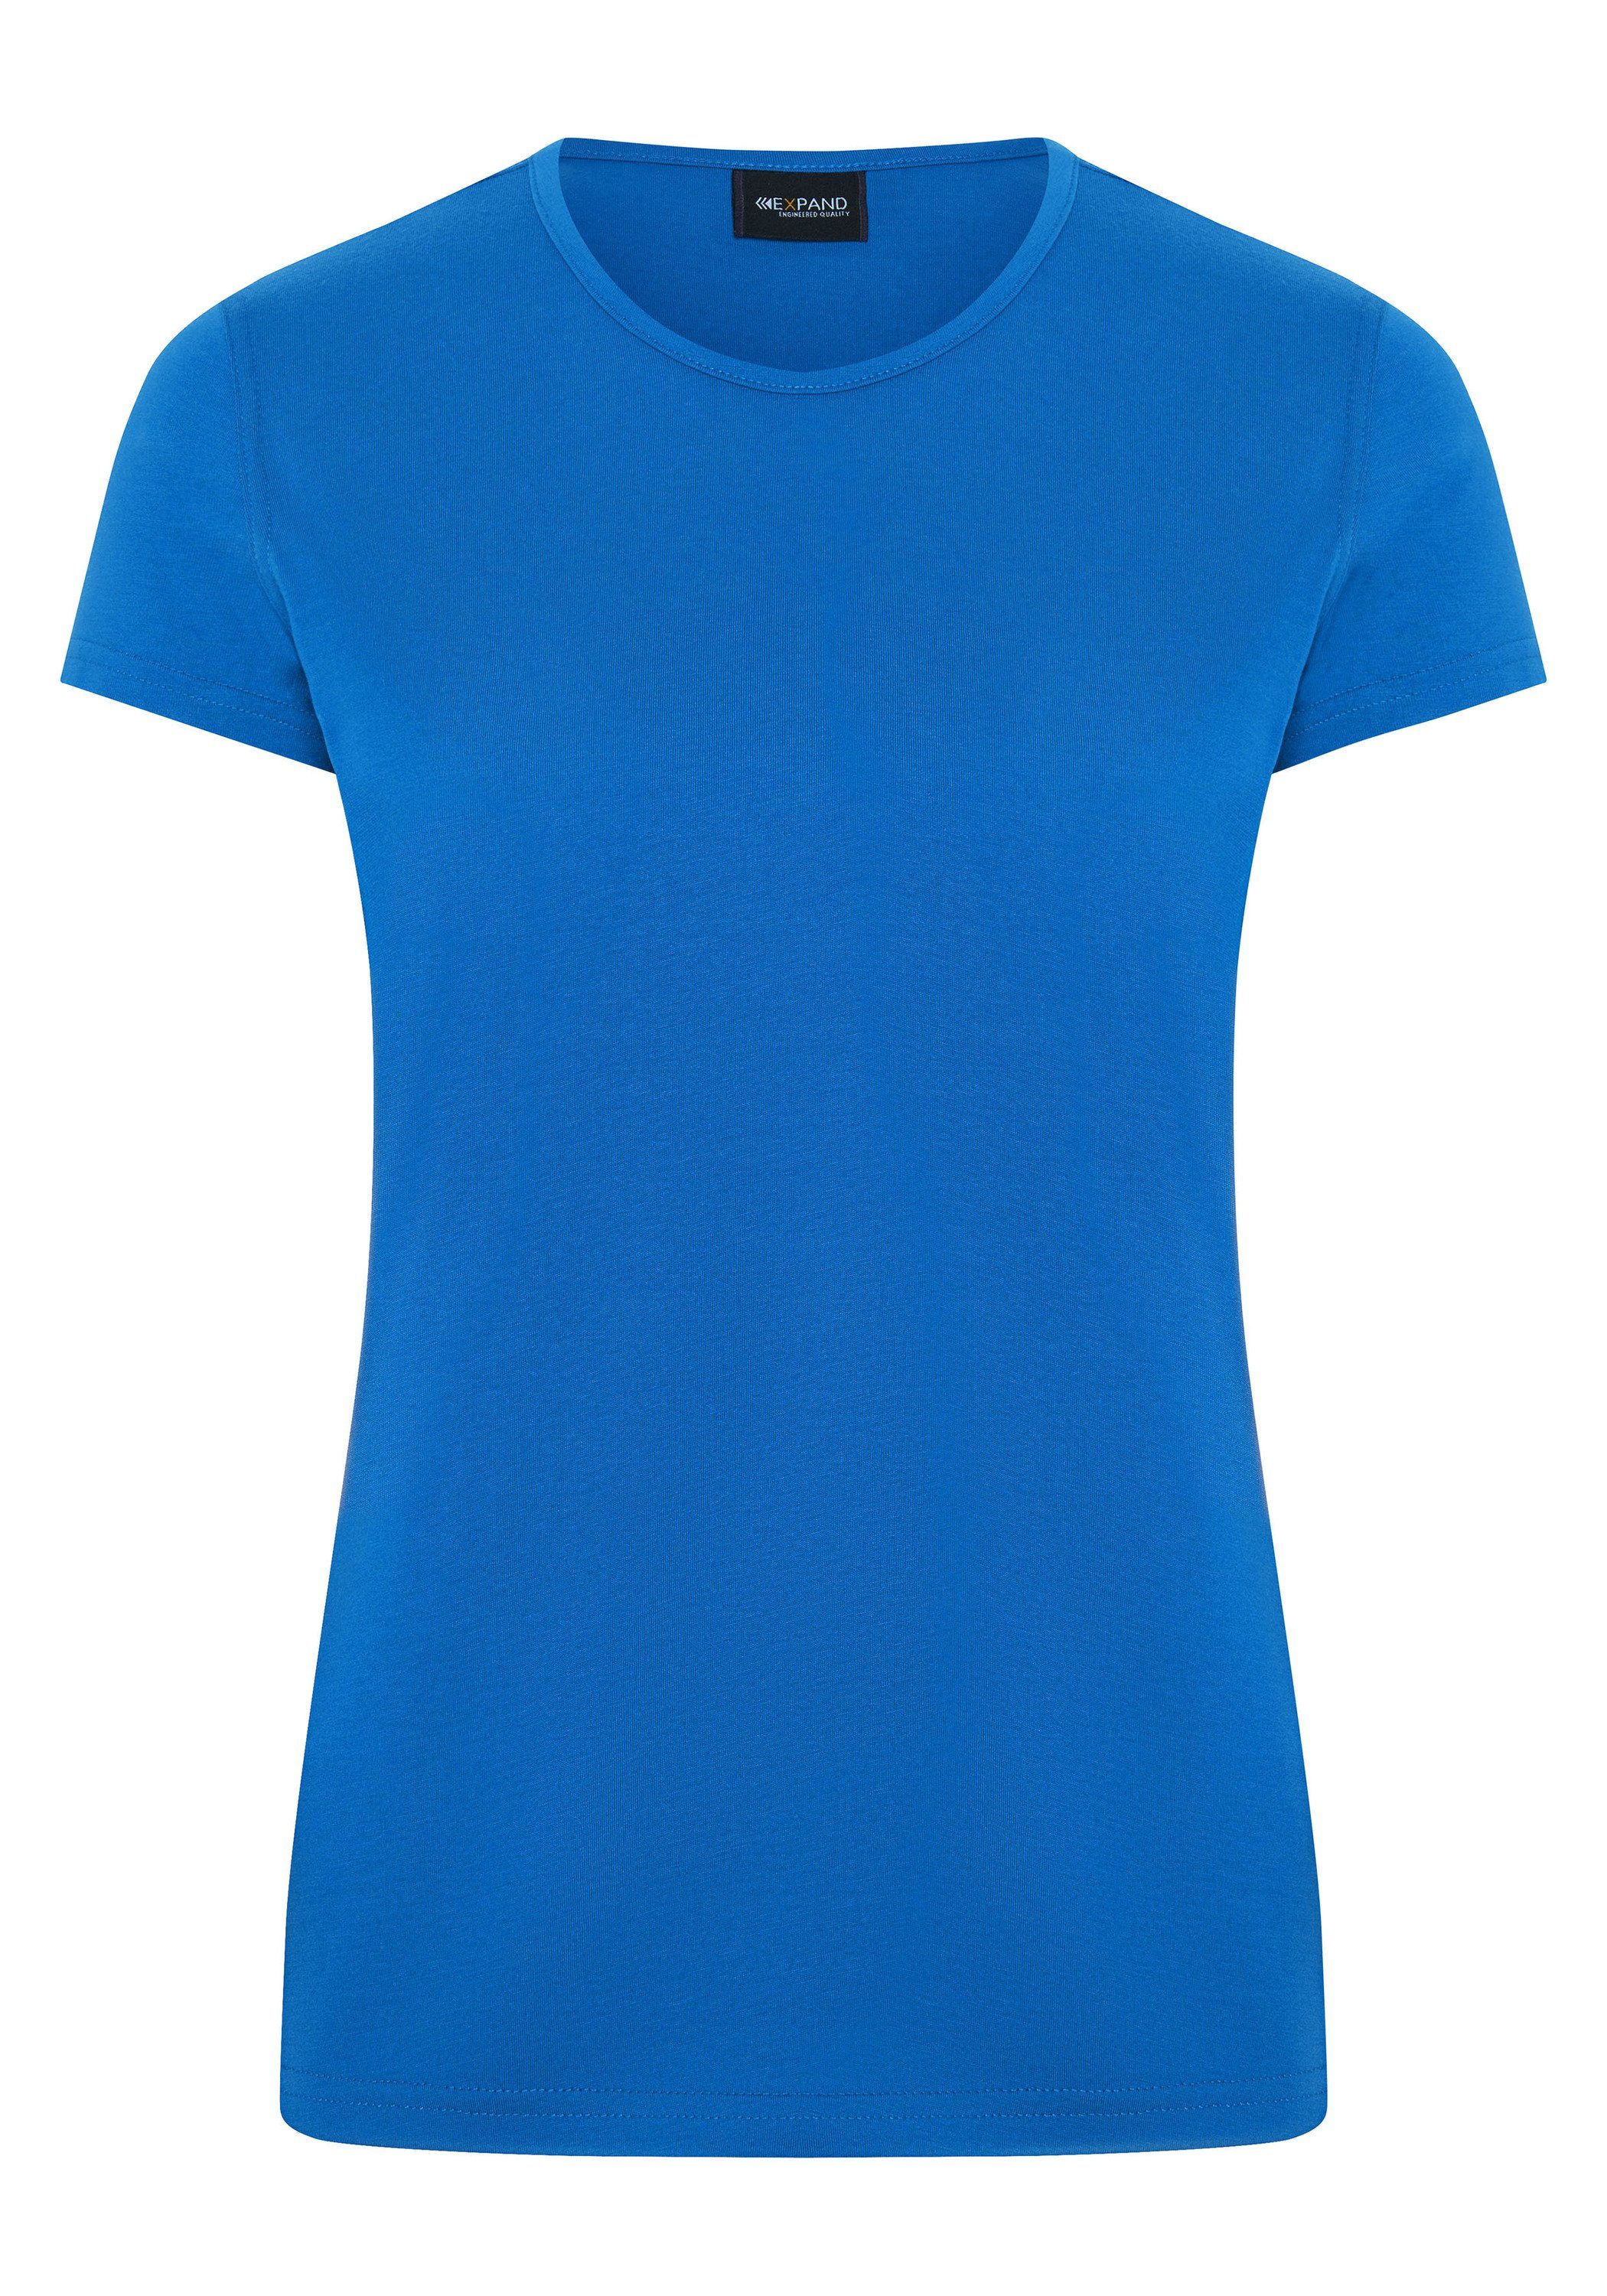 Expand blau T-Shirt Farben vielen in royal